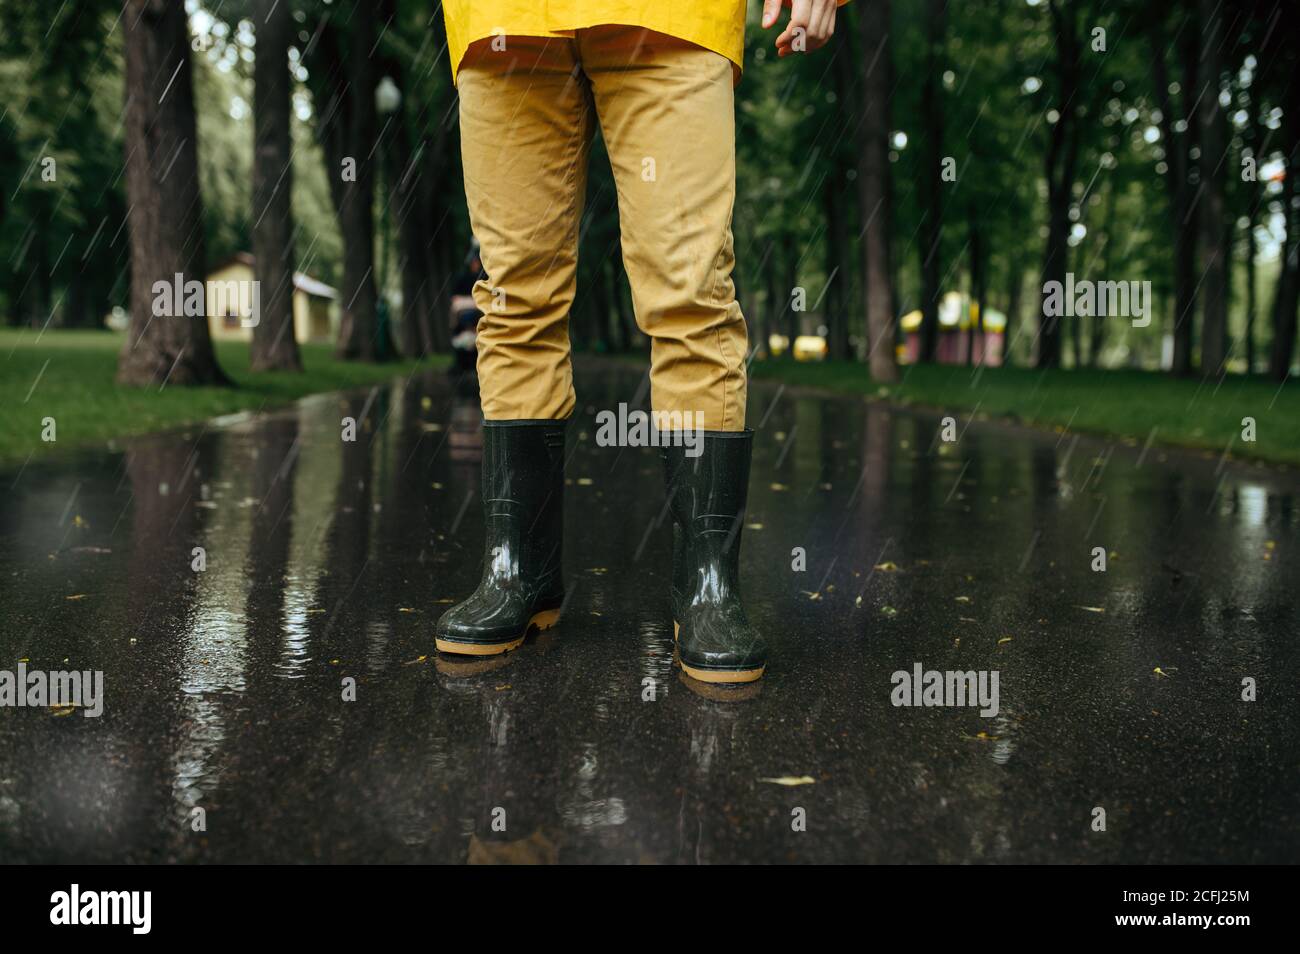 Male person in rain cape and rubber boots Stock Photo